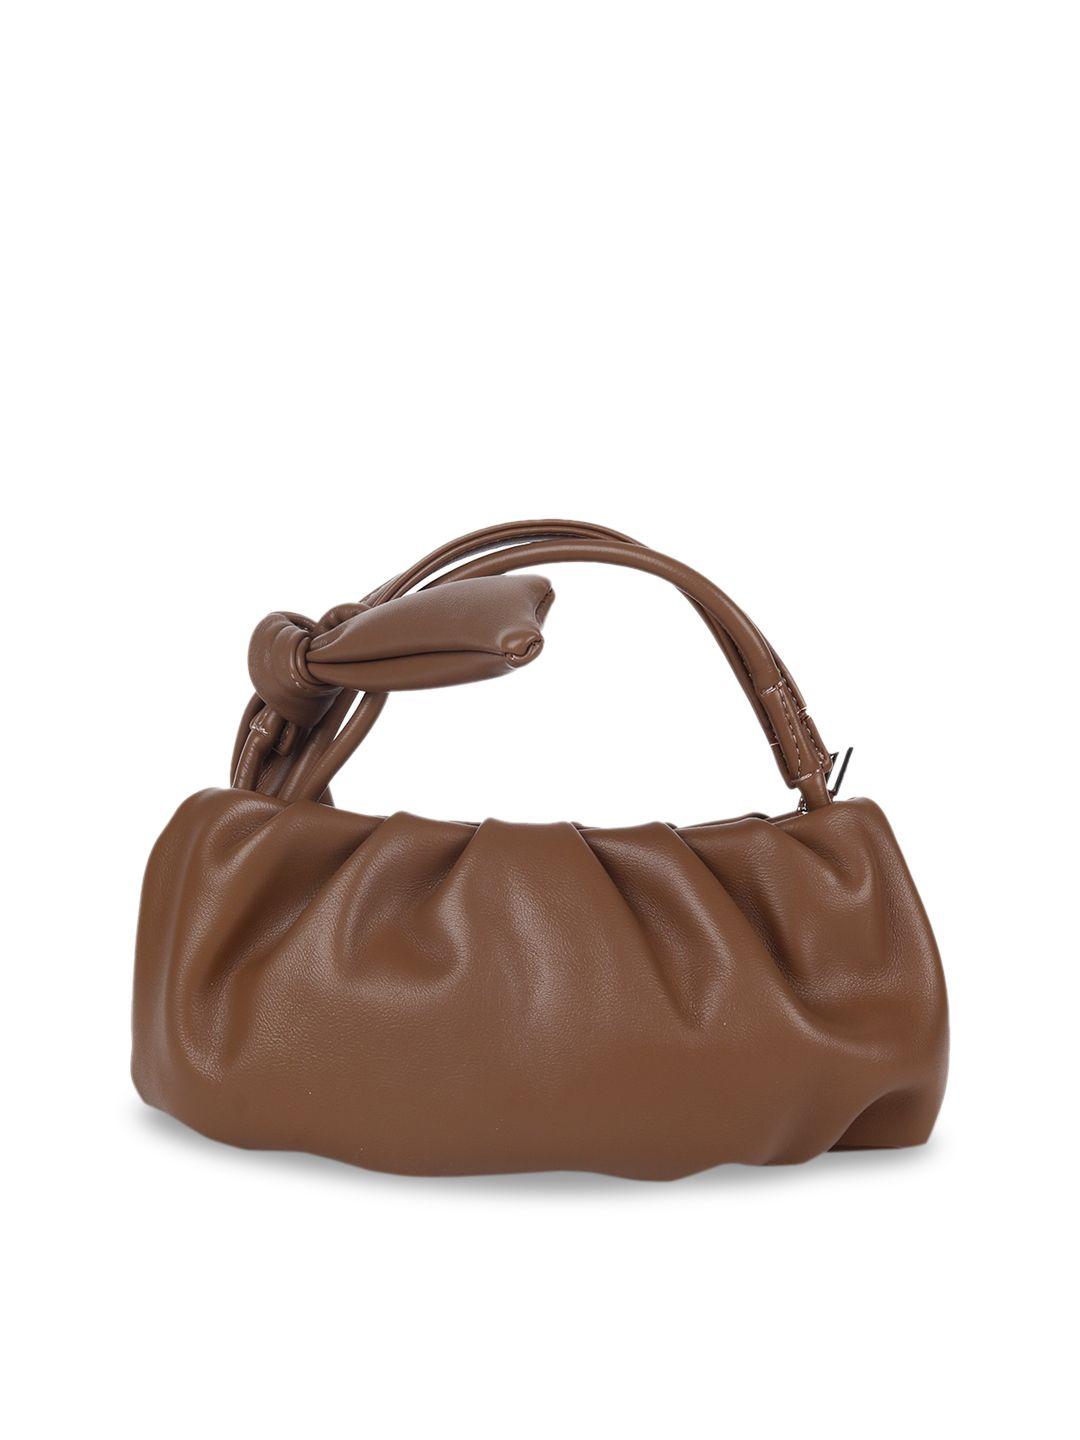 odette brown leather structured handheld bag